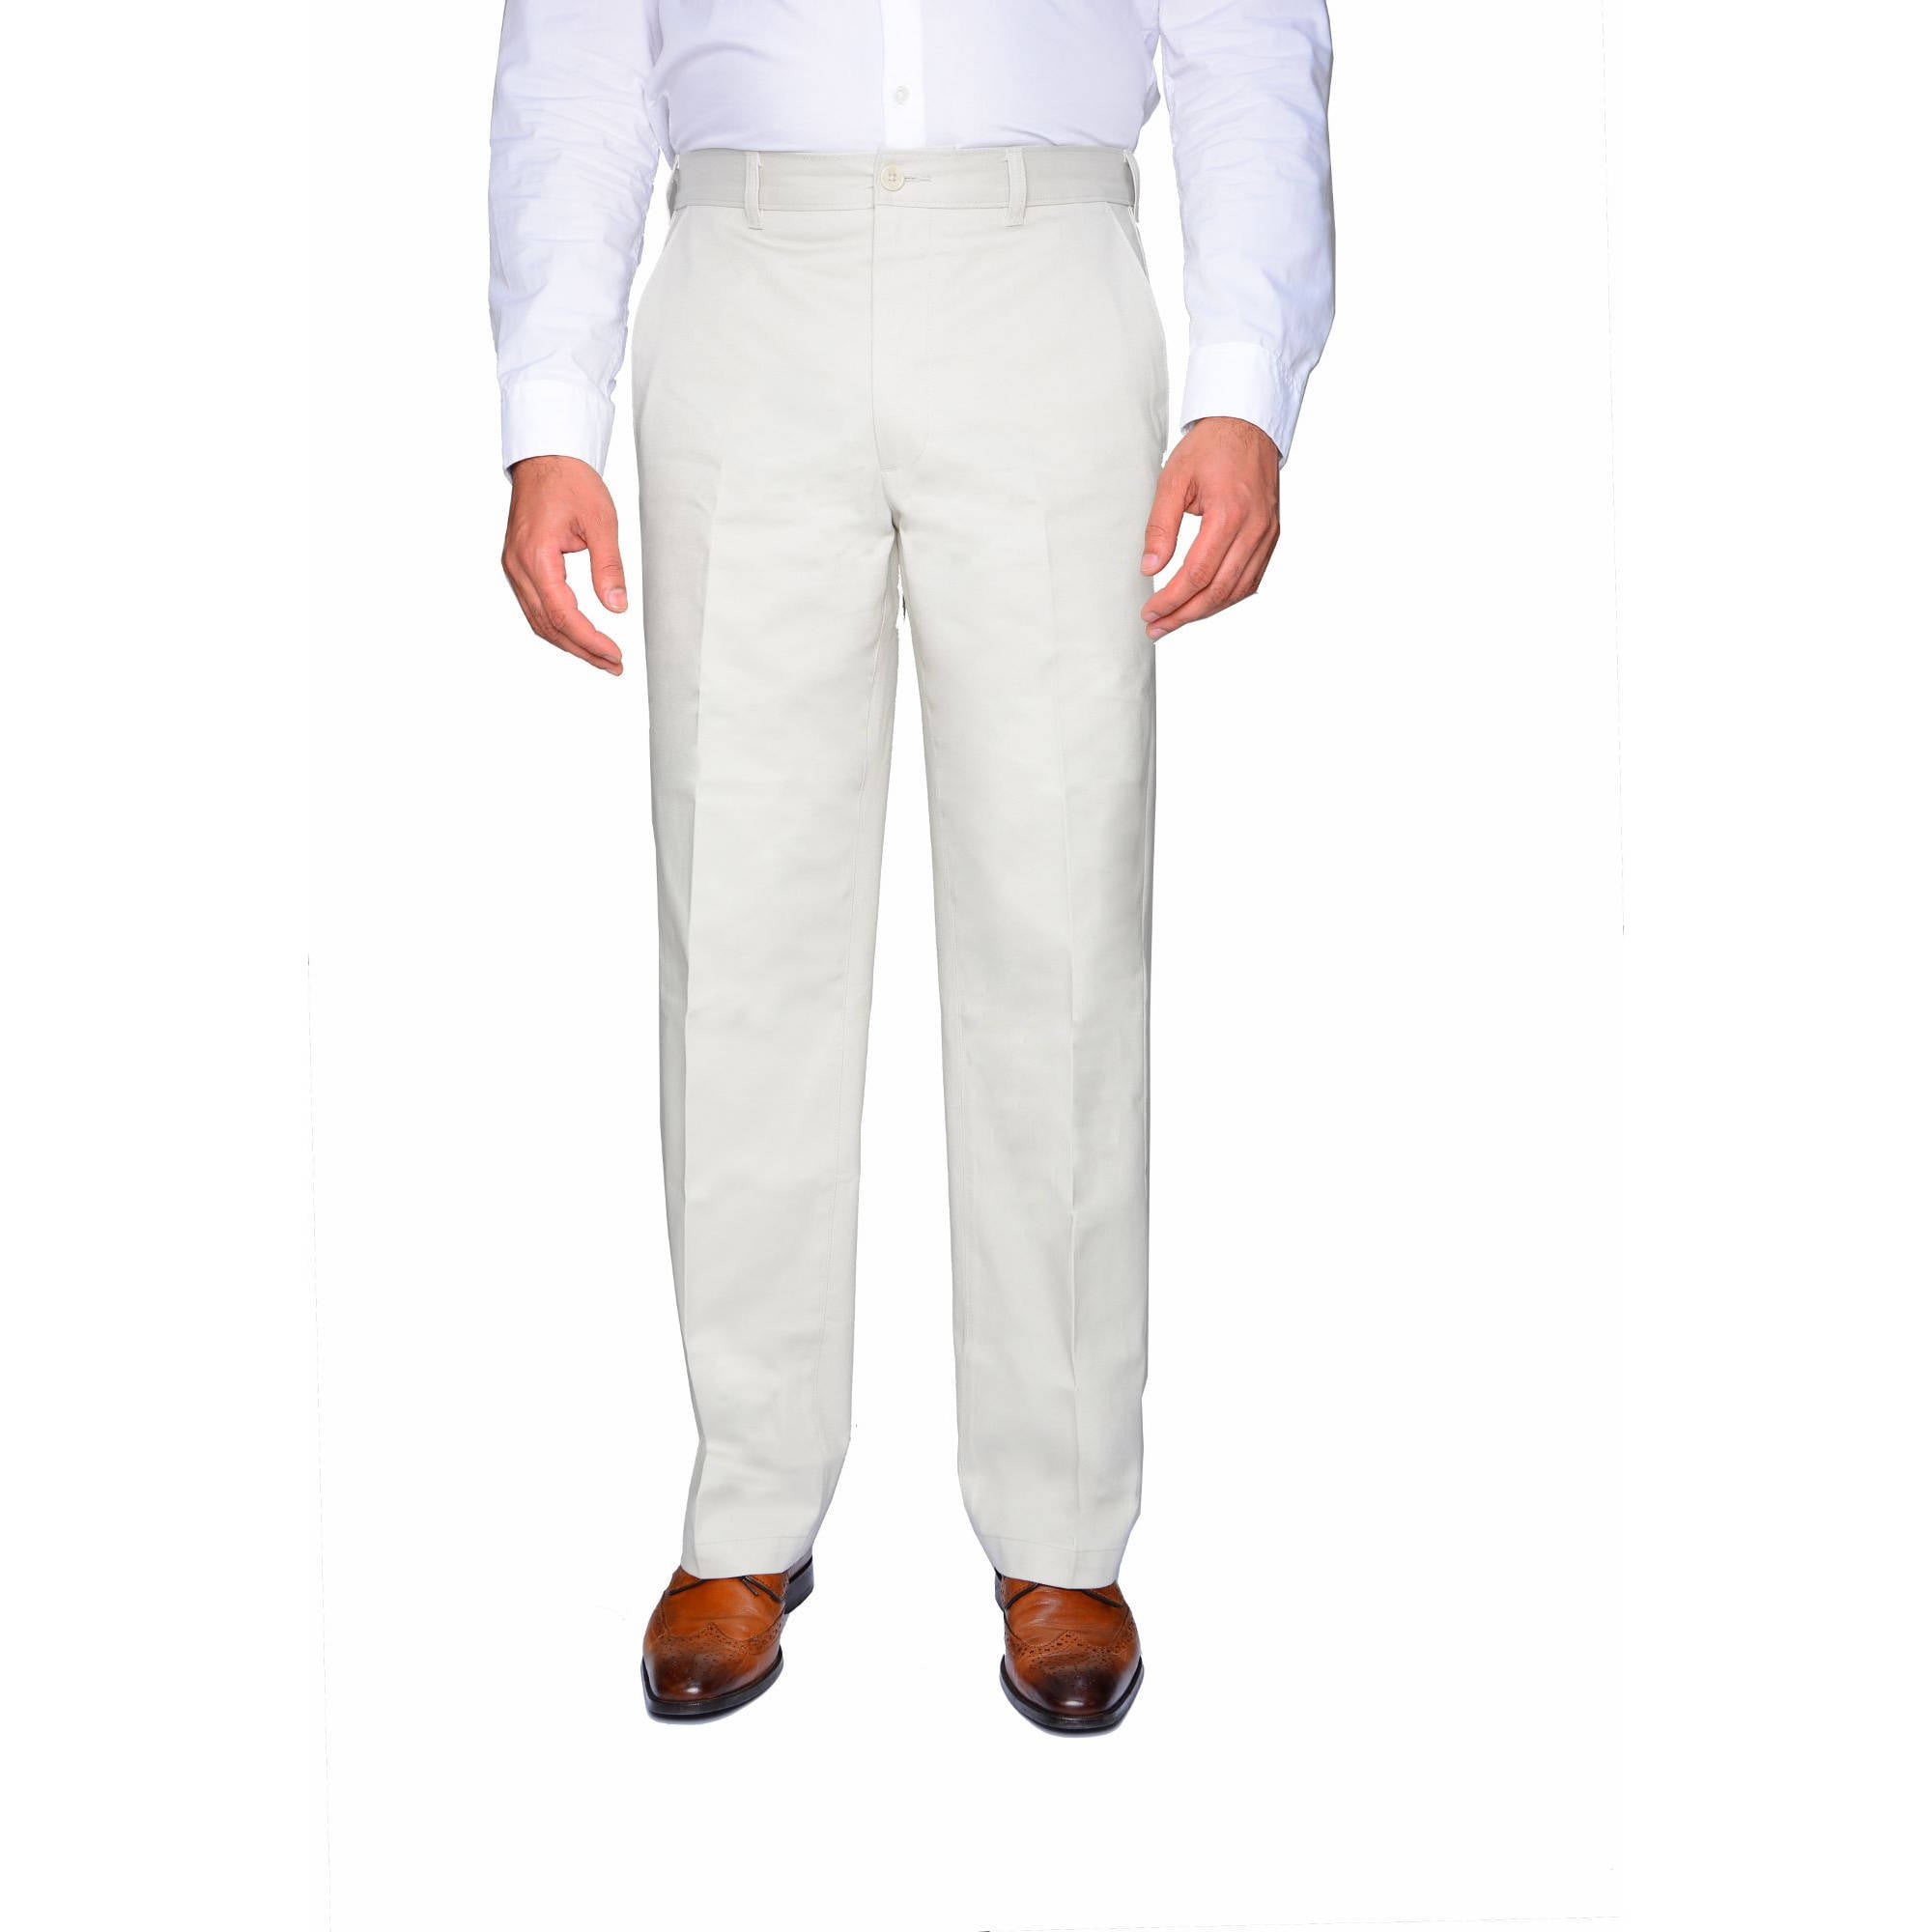 GEORGE - George Men's Flat Front Wrinkle Resistant Pants - Walmart.com ...